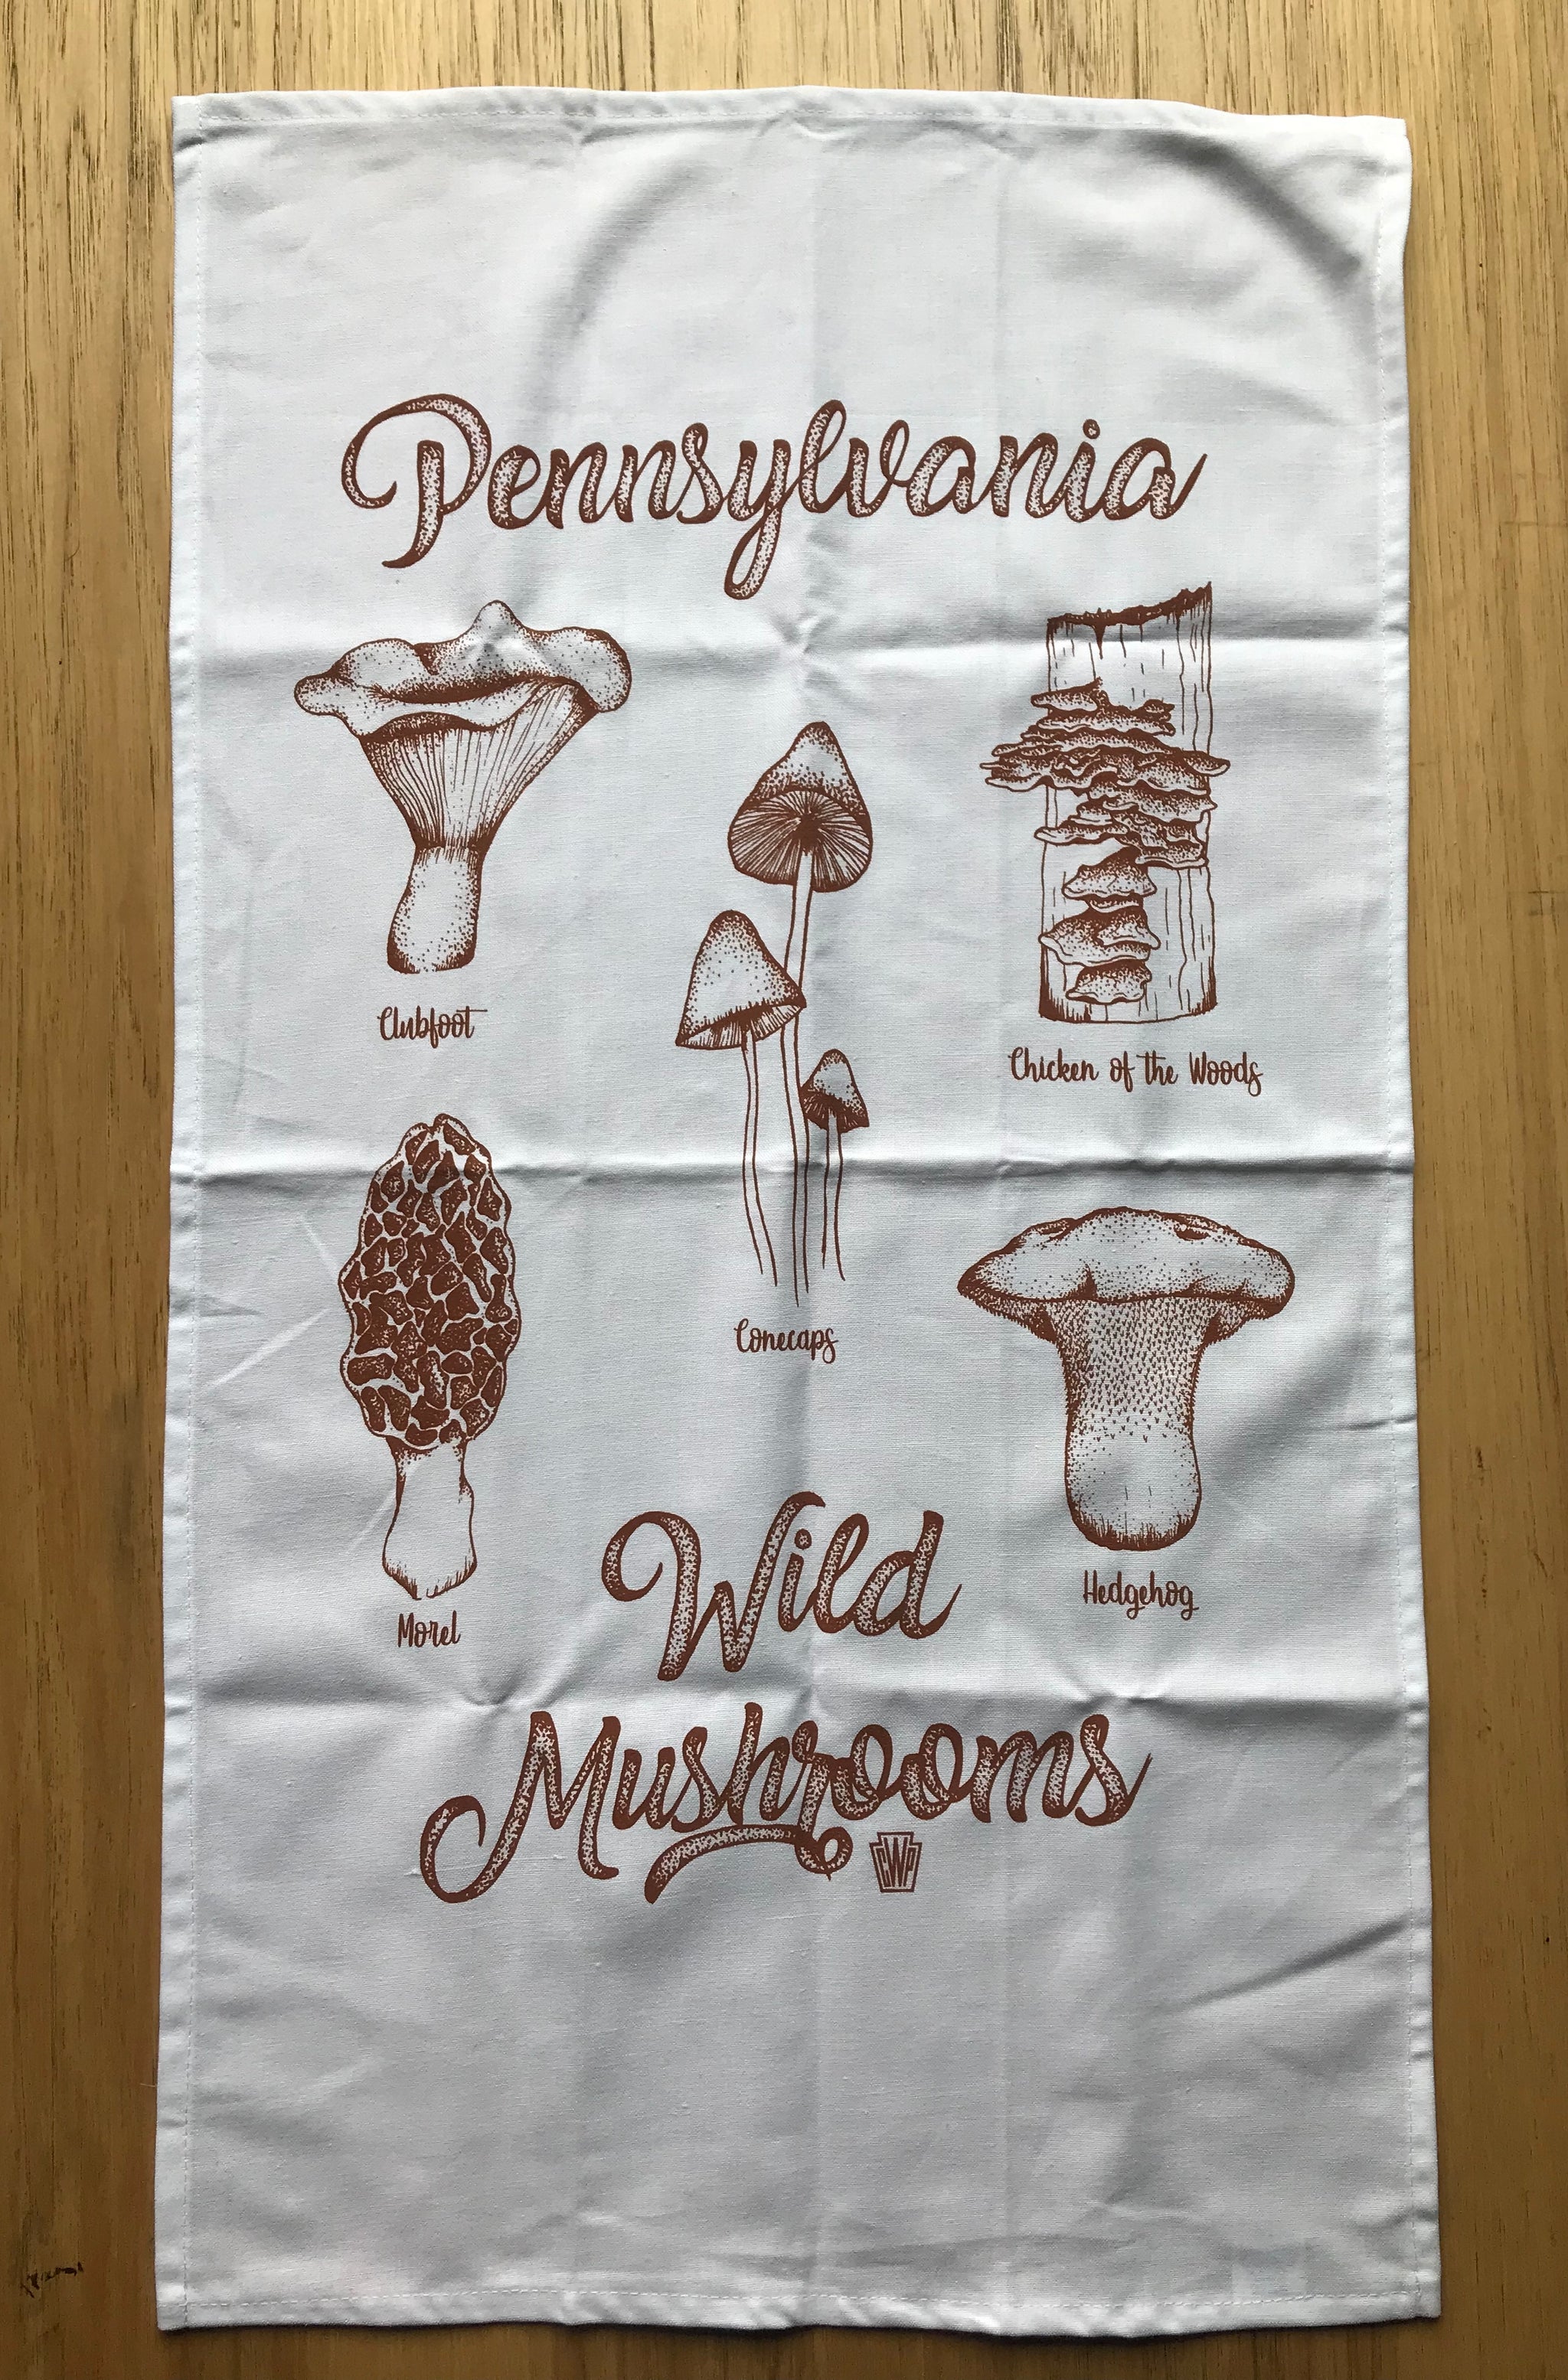 Mushroom Tea Towel